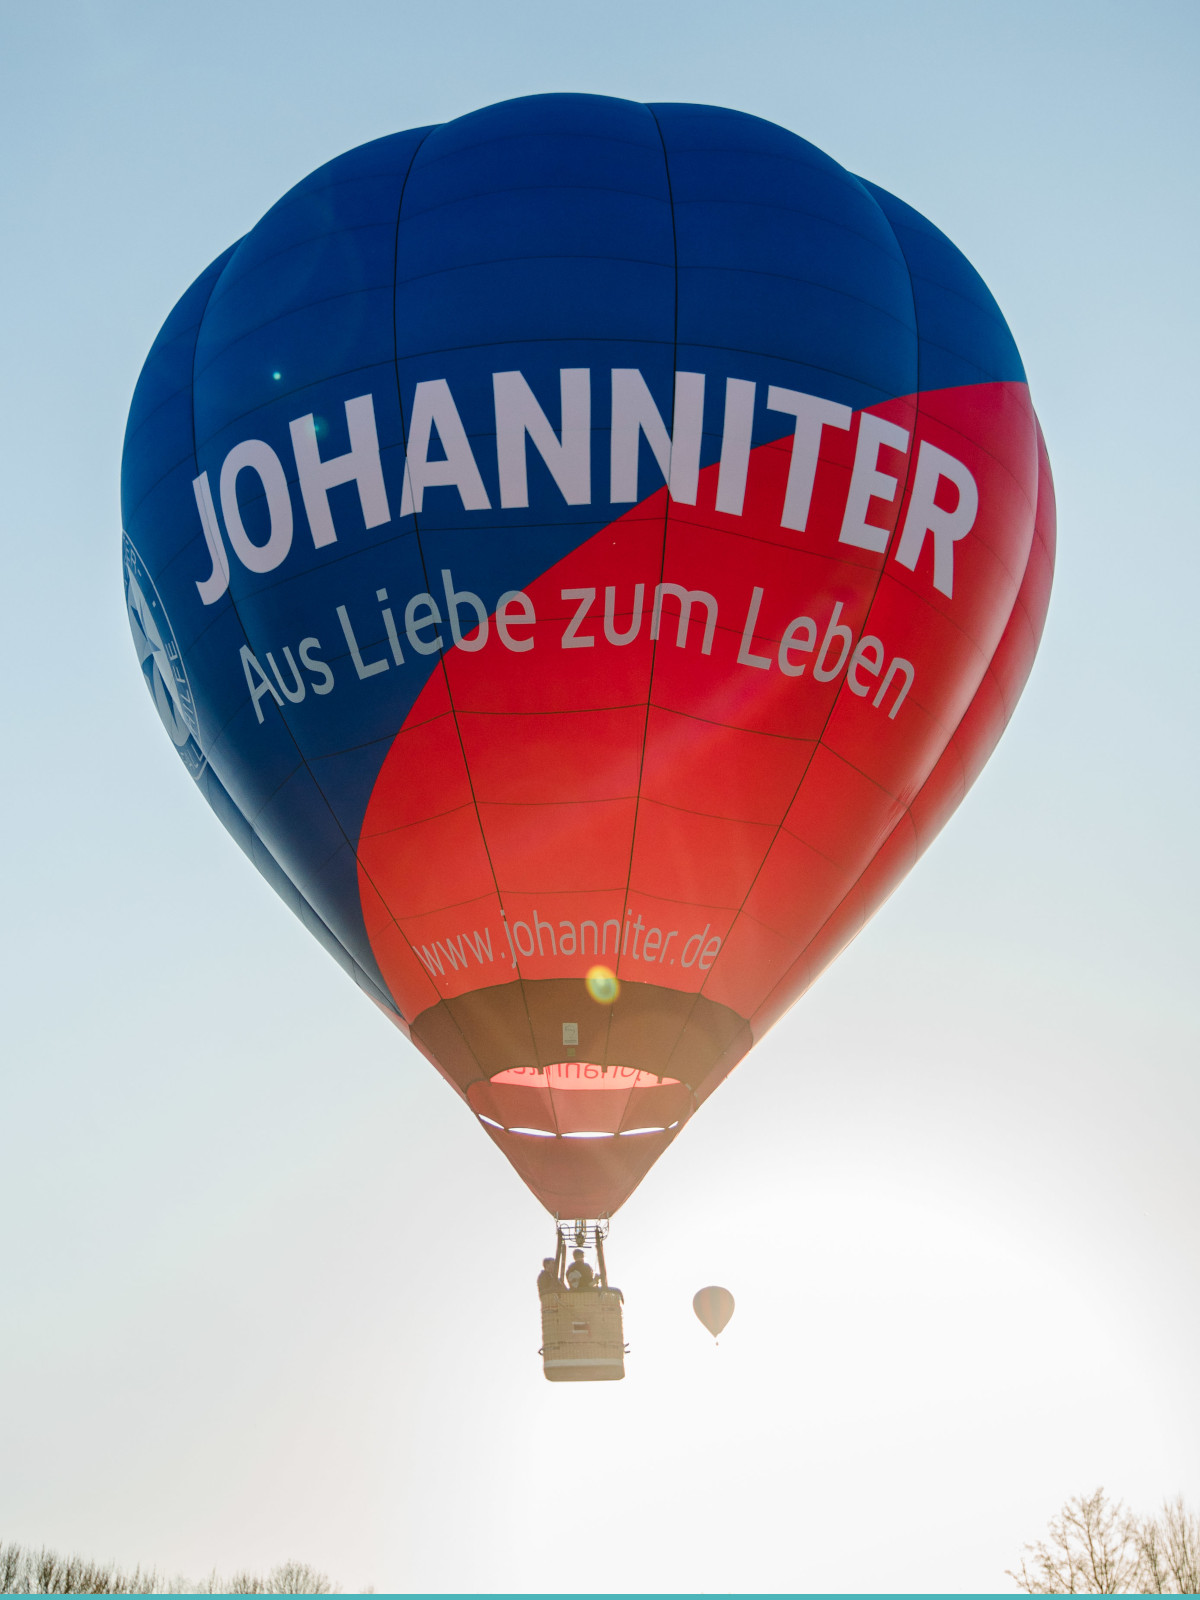 Ballon Verein Johanniter